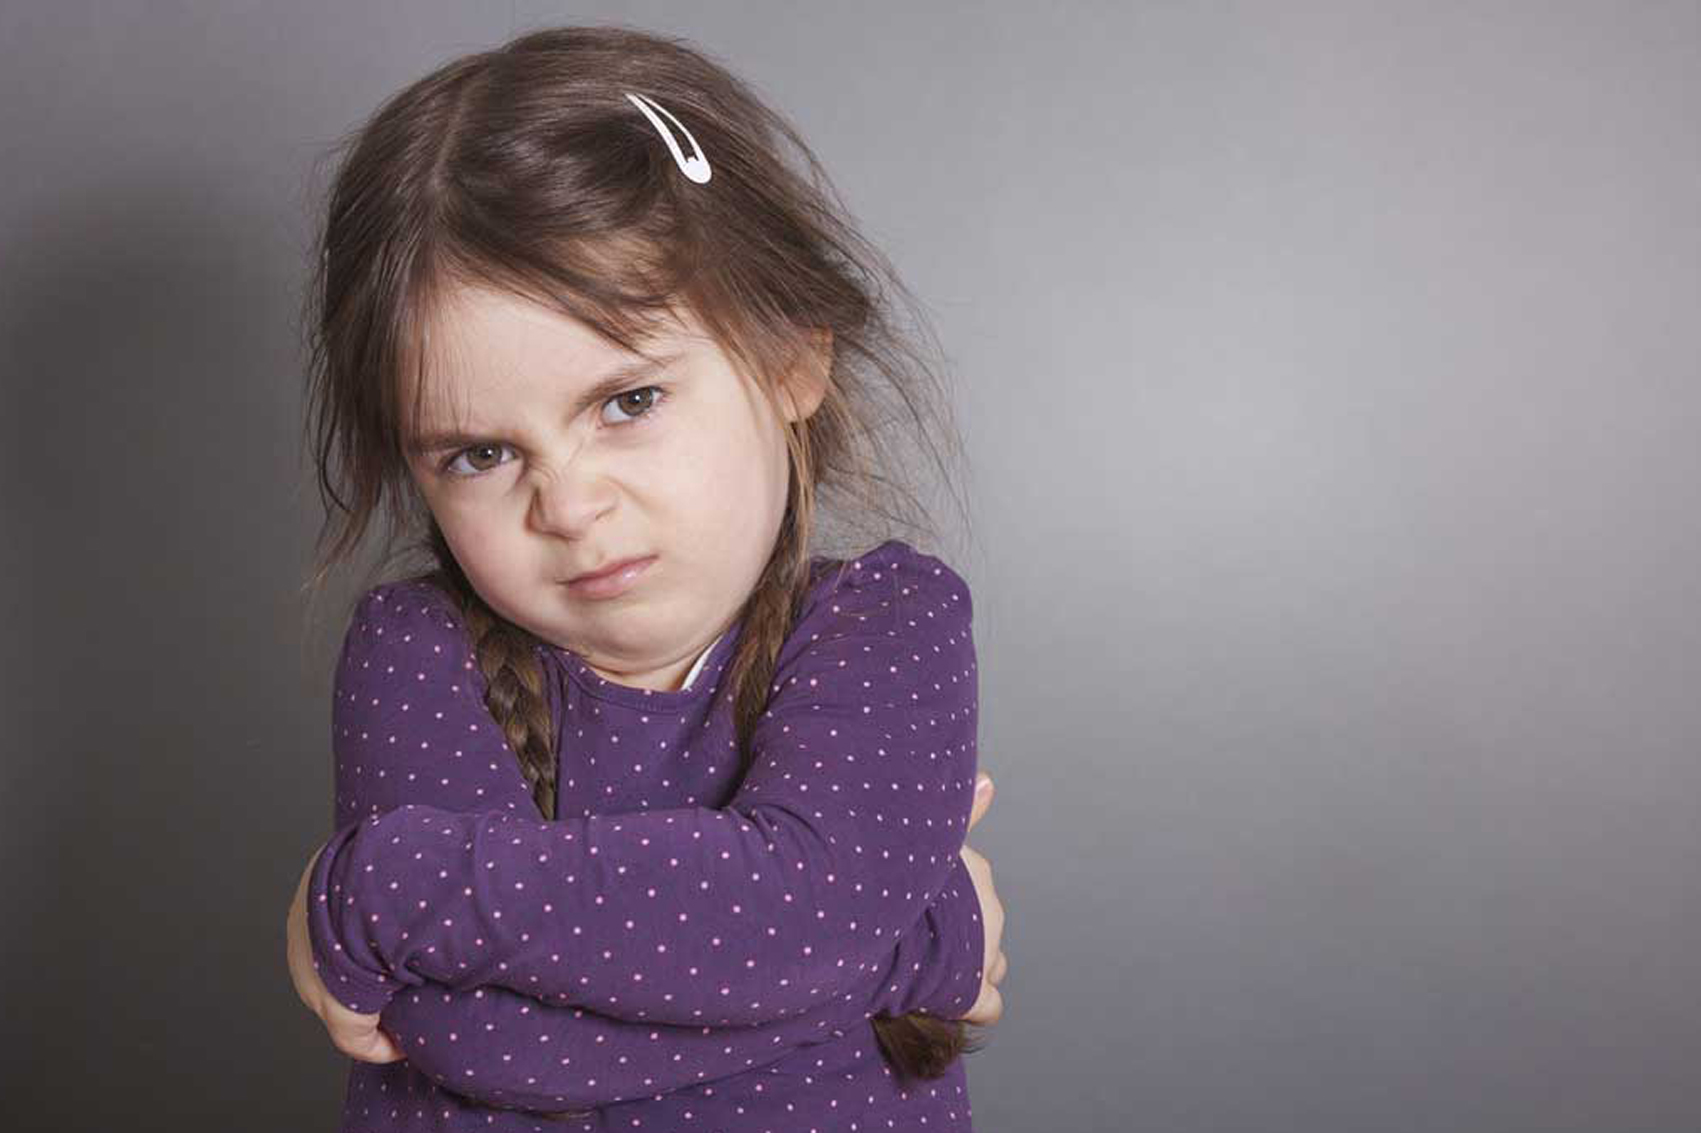 خطة تعديل سلوك بكاء الطفل عند عدم الاستجابة لطلبه